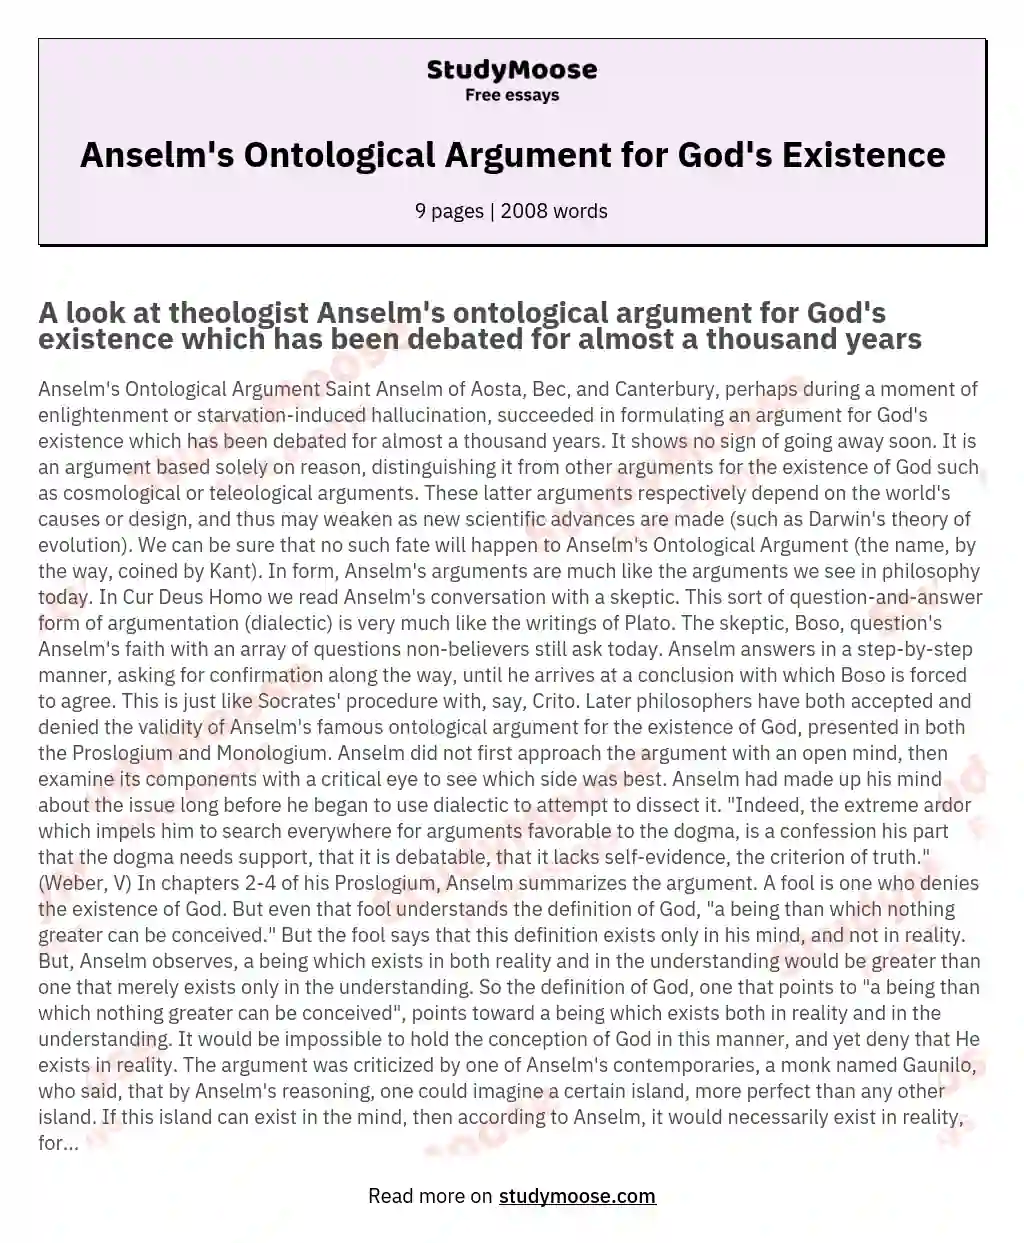 Anselm's Ontological Argument for God's Existence essay